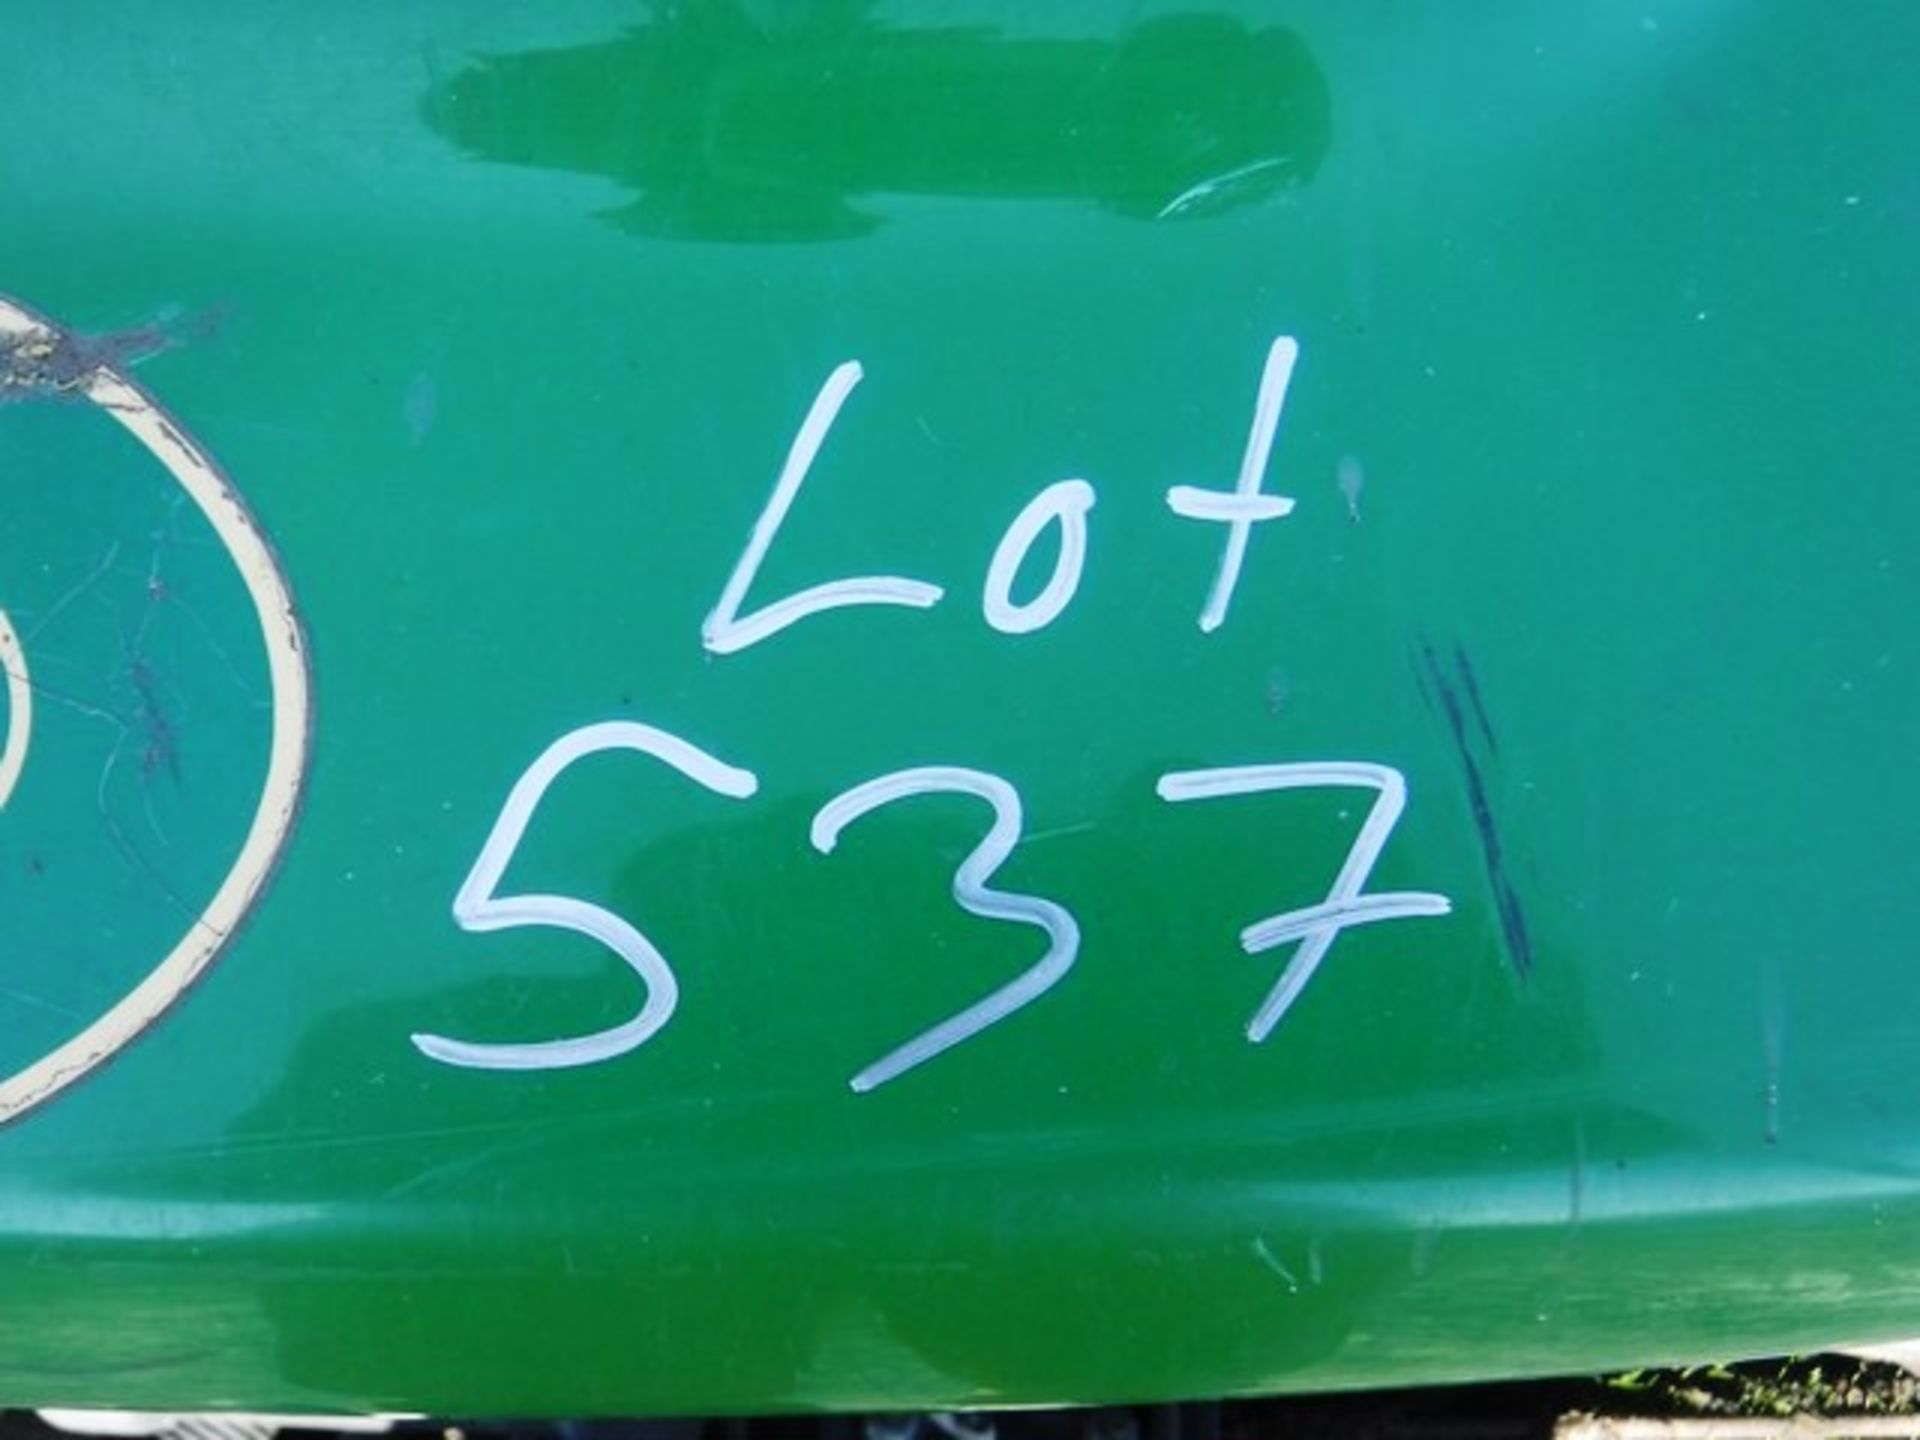 JOHN DEERE 2653B ride on mower 2131hrs (not verified). Asset No CS0901402 - Image 3 of 11